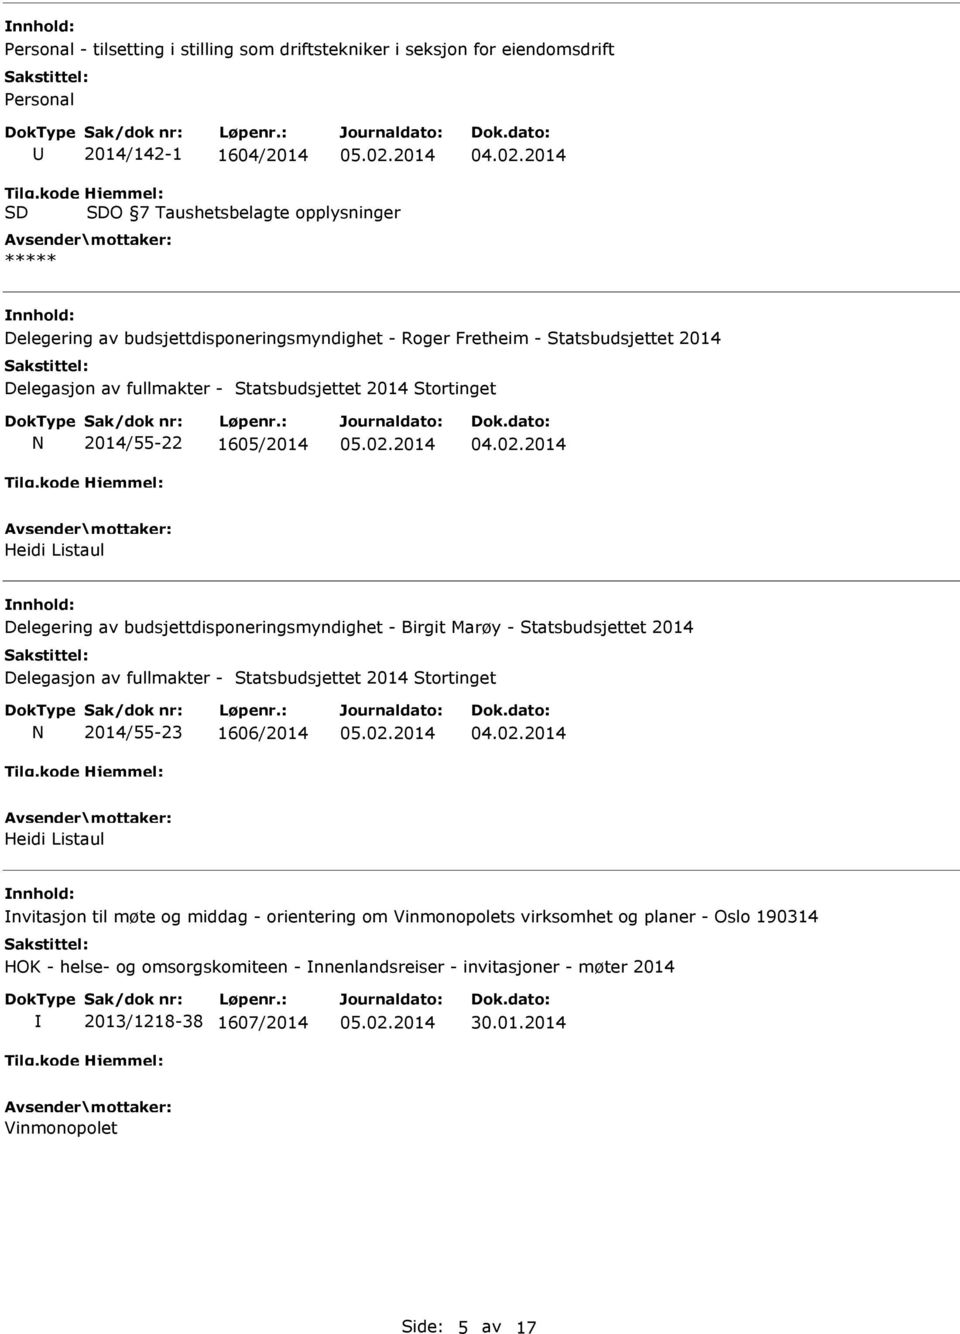 budsjettdisponeringsmyndighet - Birgit Marøy - Statsbudsjettet 2014 Delegasjon av fullmakter - Statsbudsjettet 2014 Stortinget N 2014/55-23 1606/2014 Heidi Listaul nvitasjon til møte